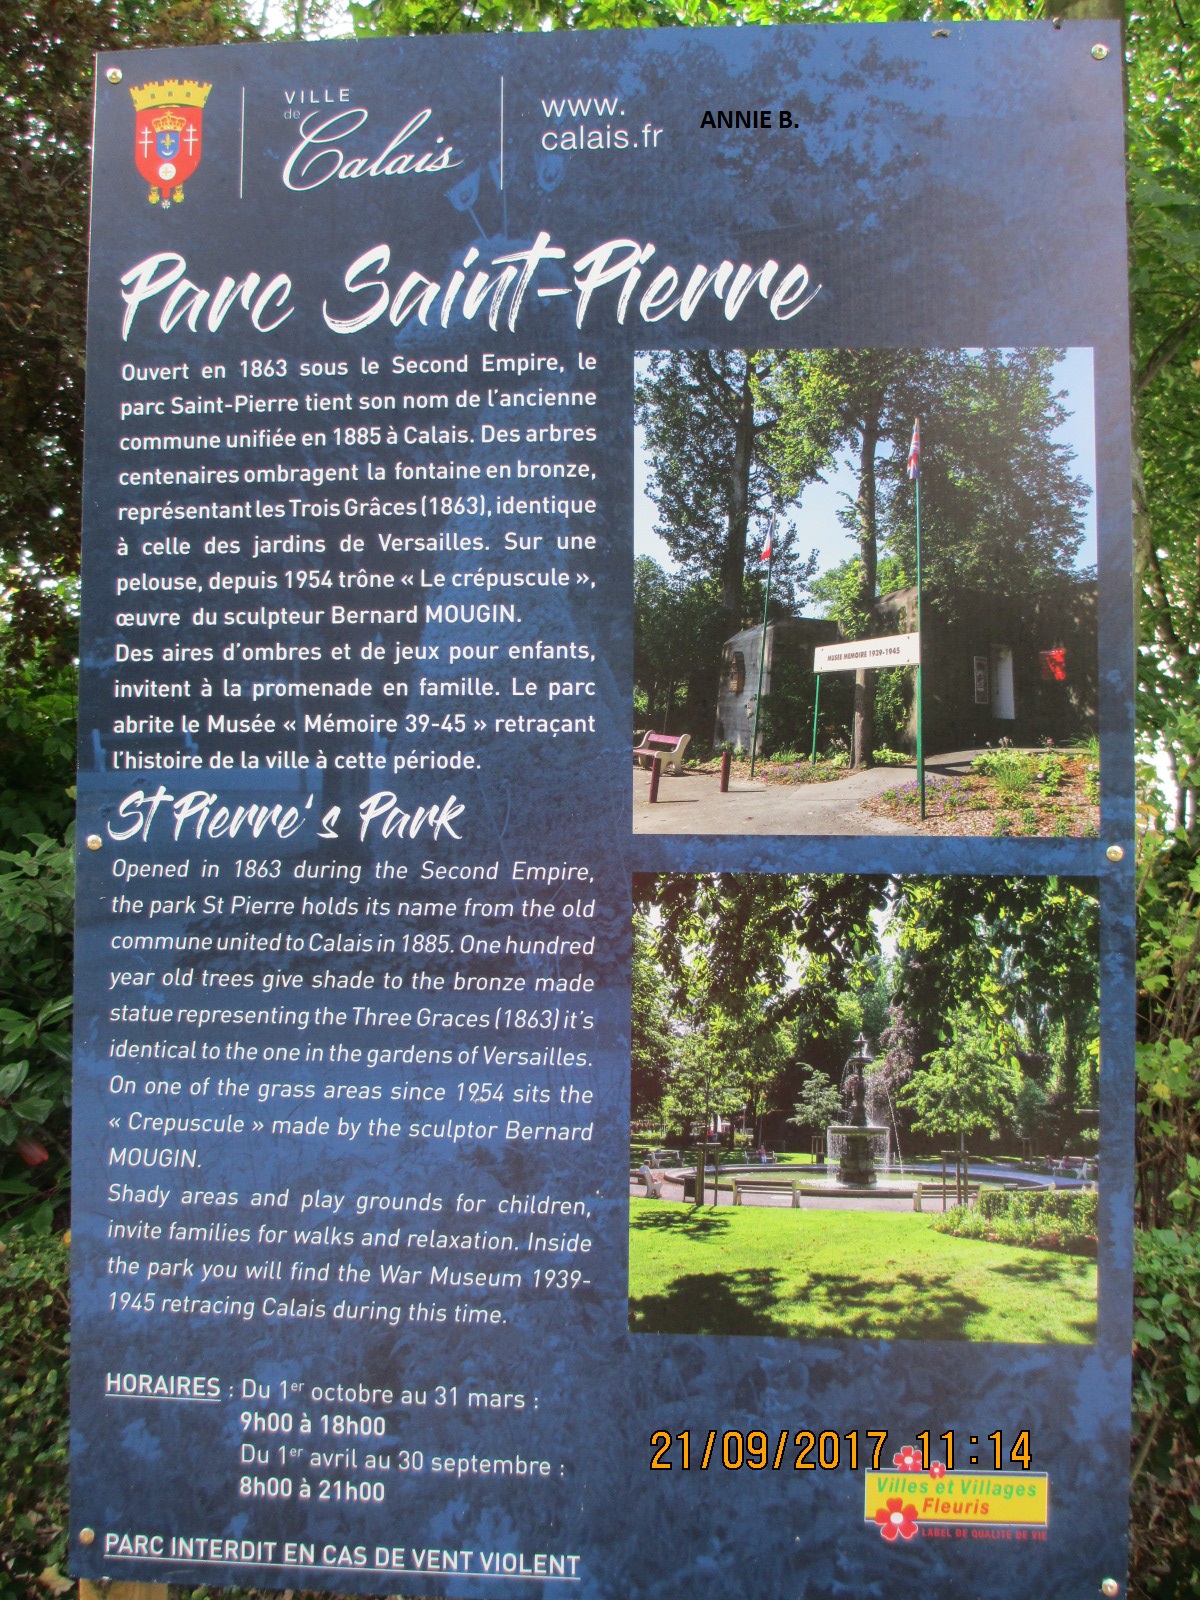 Informations sur le parc Saint-Pierre